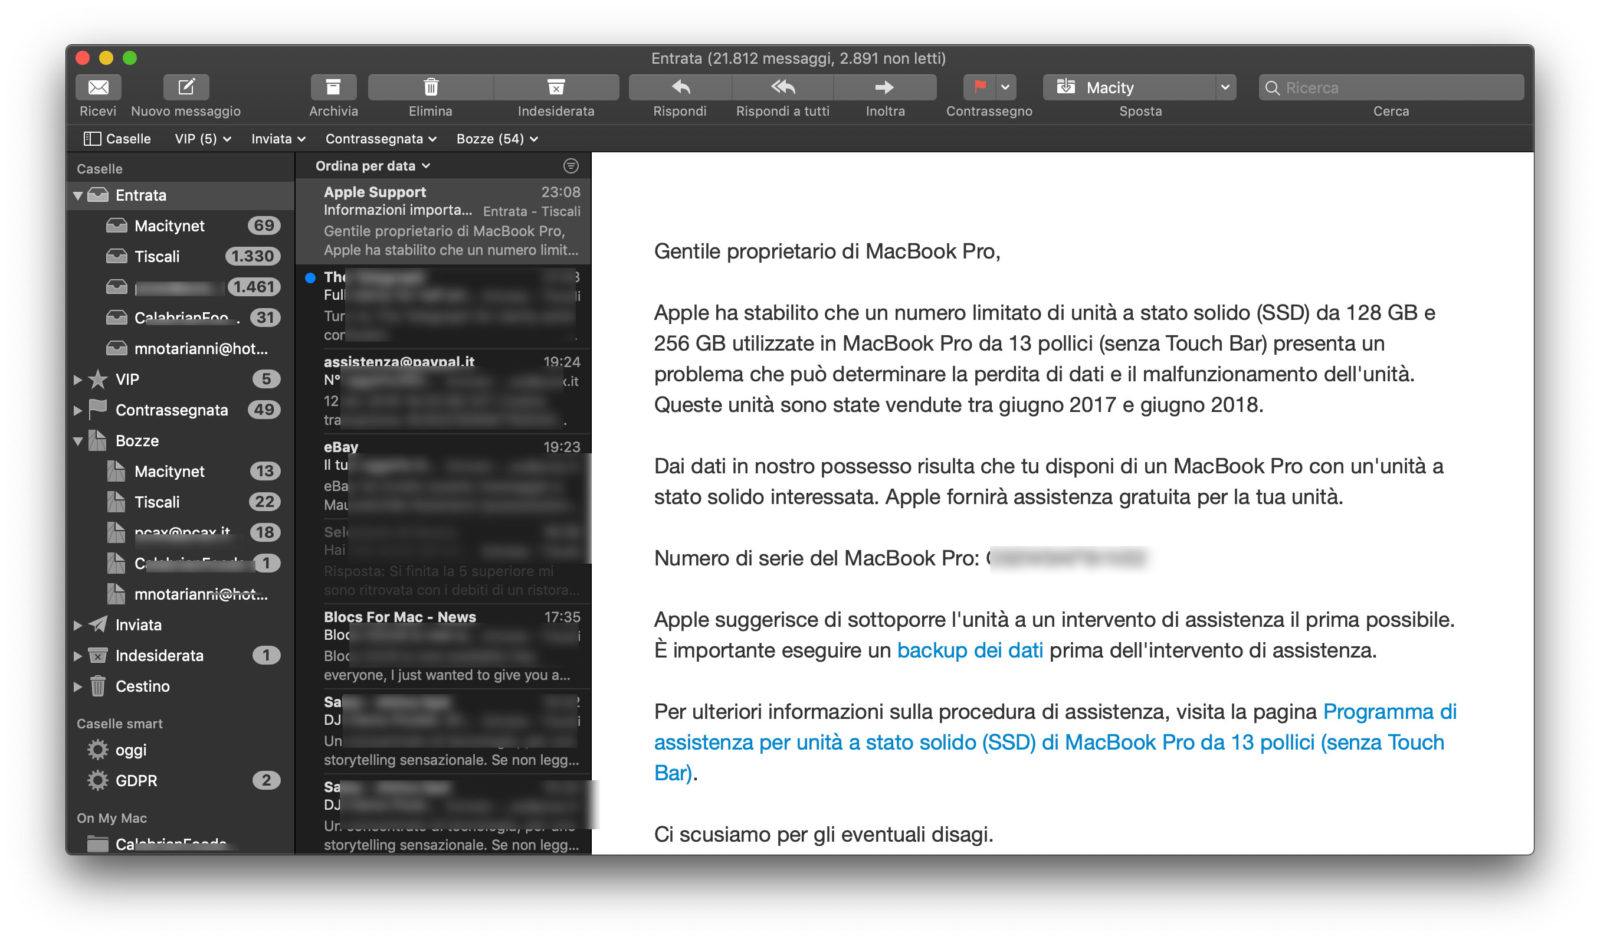 Apple manda una mail per ricordare il programma di assistenza per i MacBook Pro 13″ senza Touch Bar